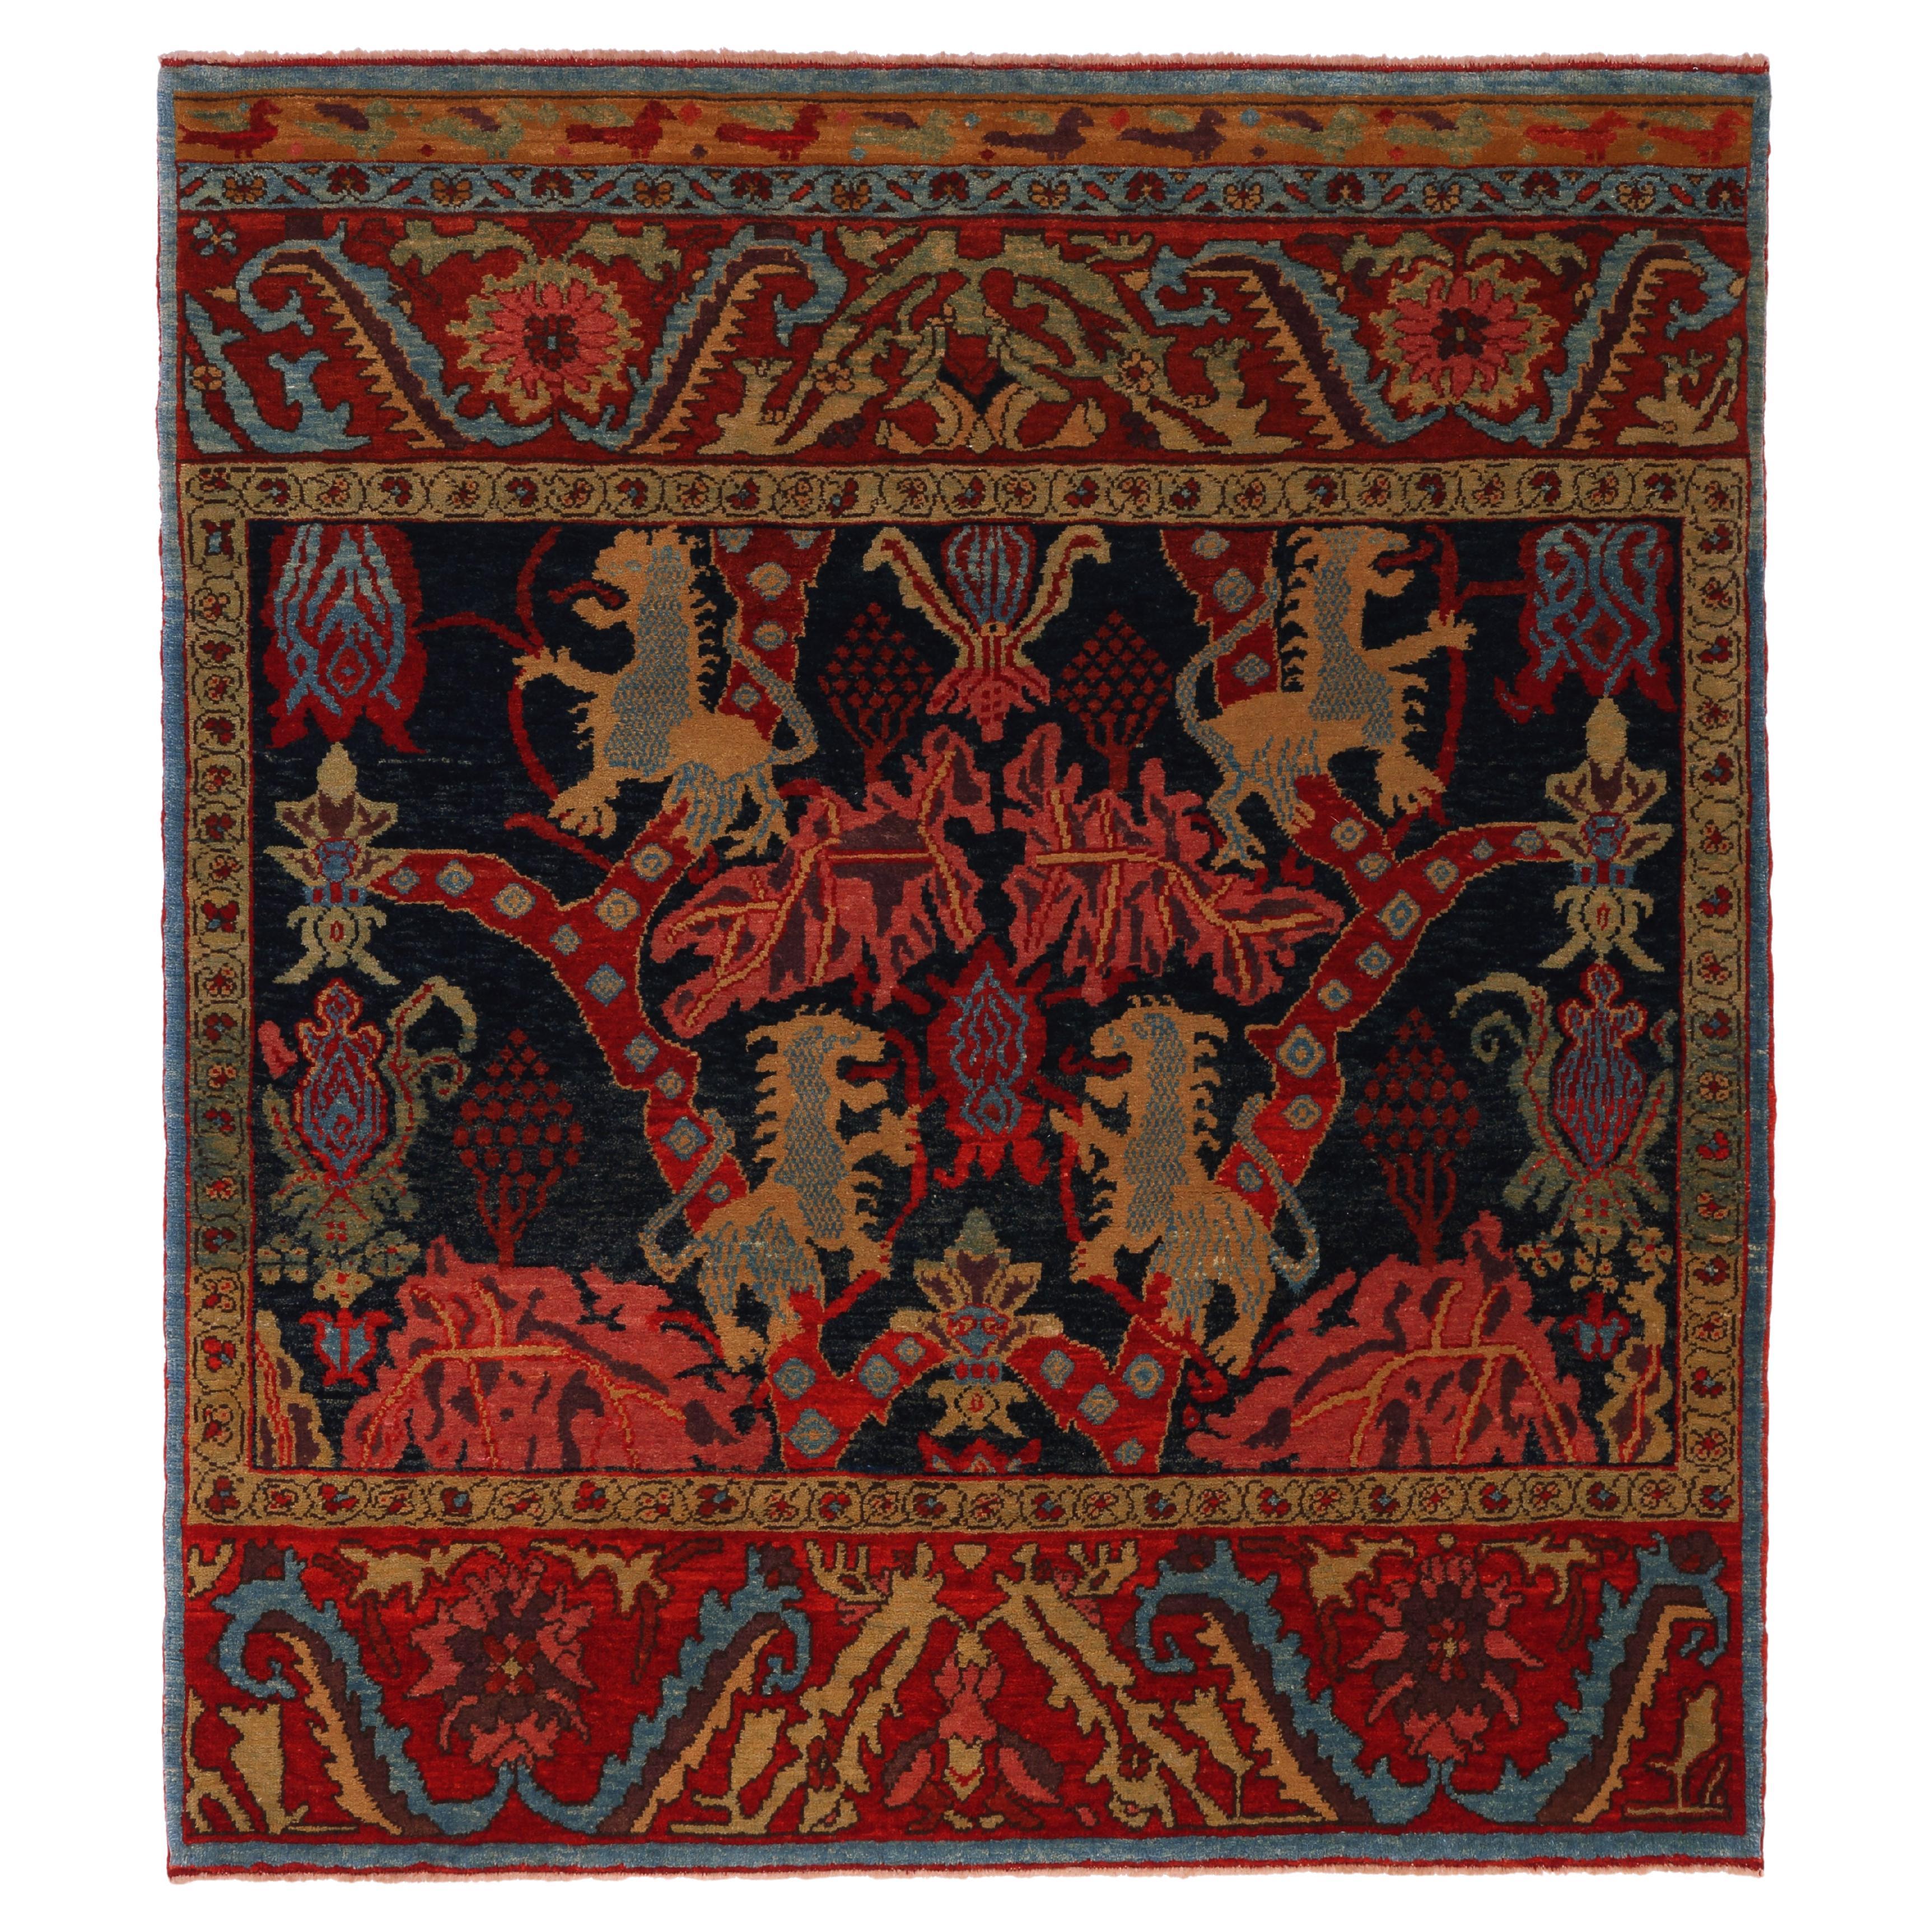 Ararat Rugs Bidjar Rug with Lion Design Persian Revival Carpet Natural Dyed For Sale